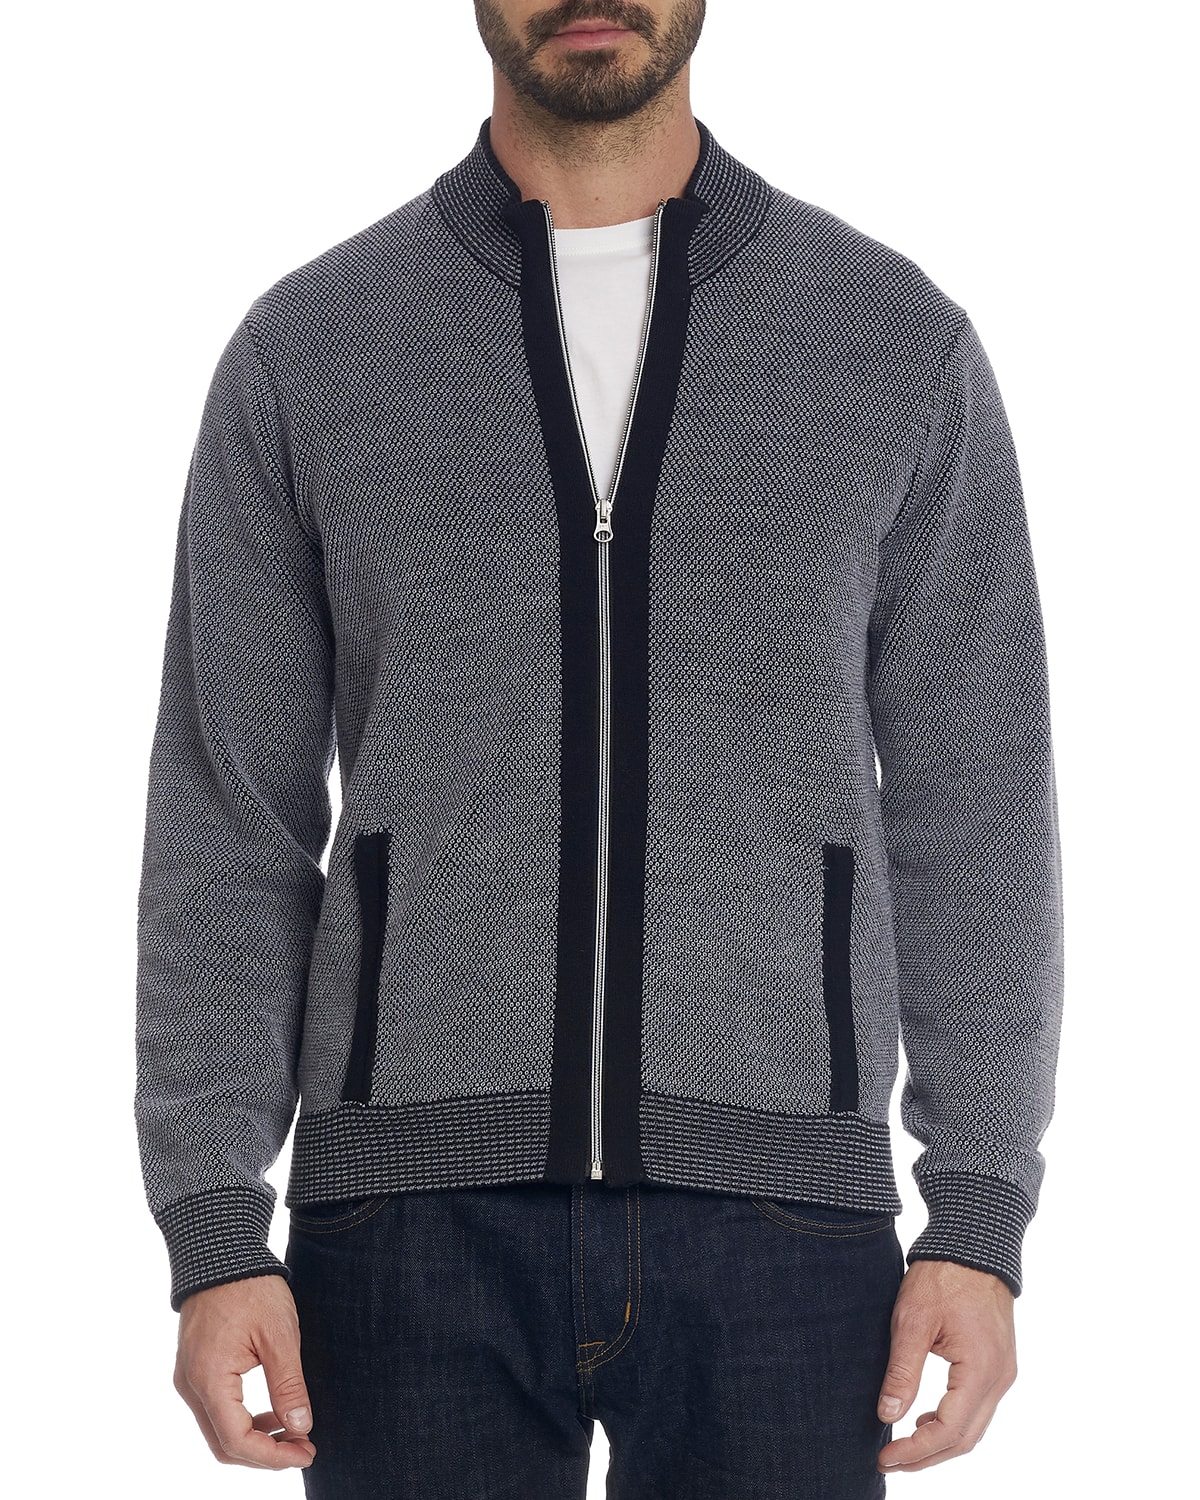 Robert Graham Men's Virgo Quarter-Zip Sweater | Neiman Marcus